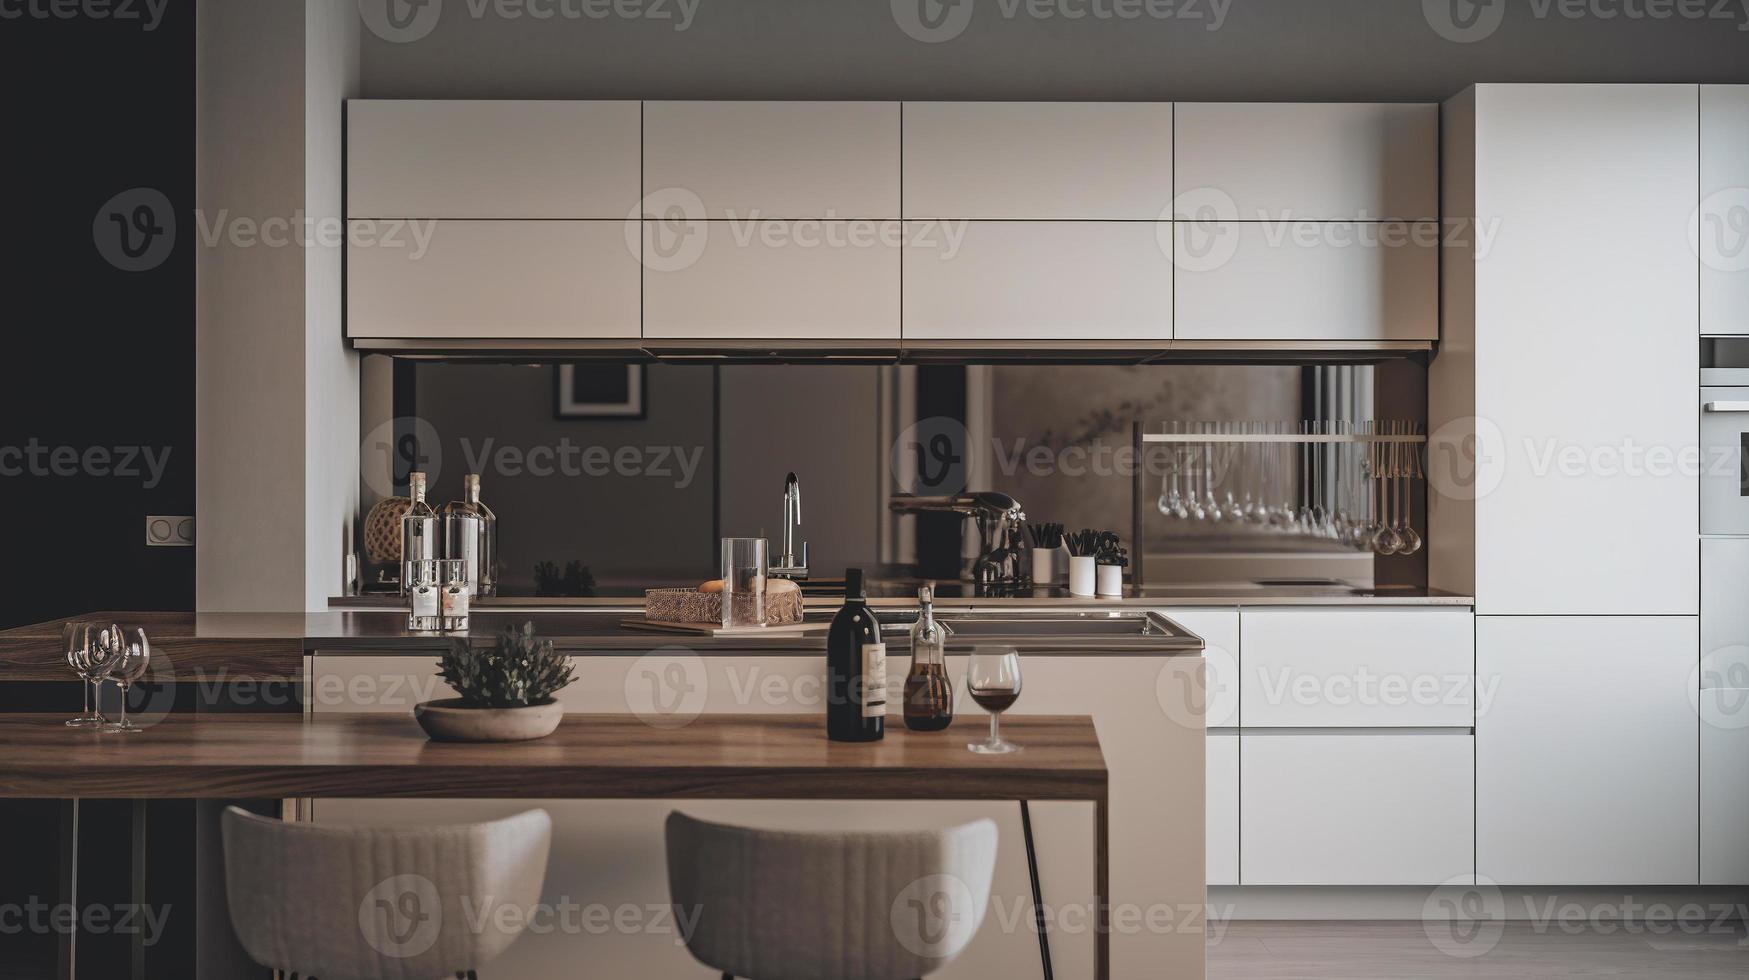 semplice minimalista moderno cucina accogliente confortevole e elegante per Casa e appartamento, mobiletto, cucina lavello, e alcuni cucina elettrodomestici, pranzo camera, bene interno. foto